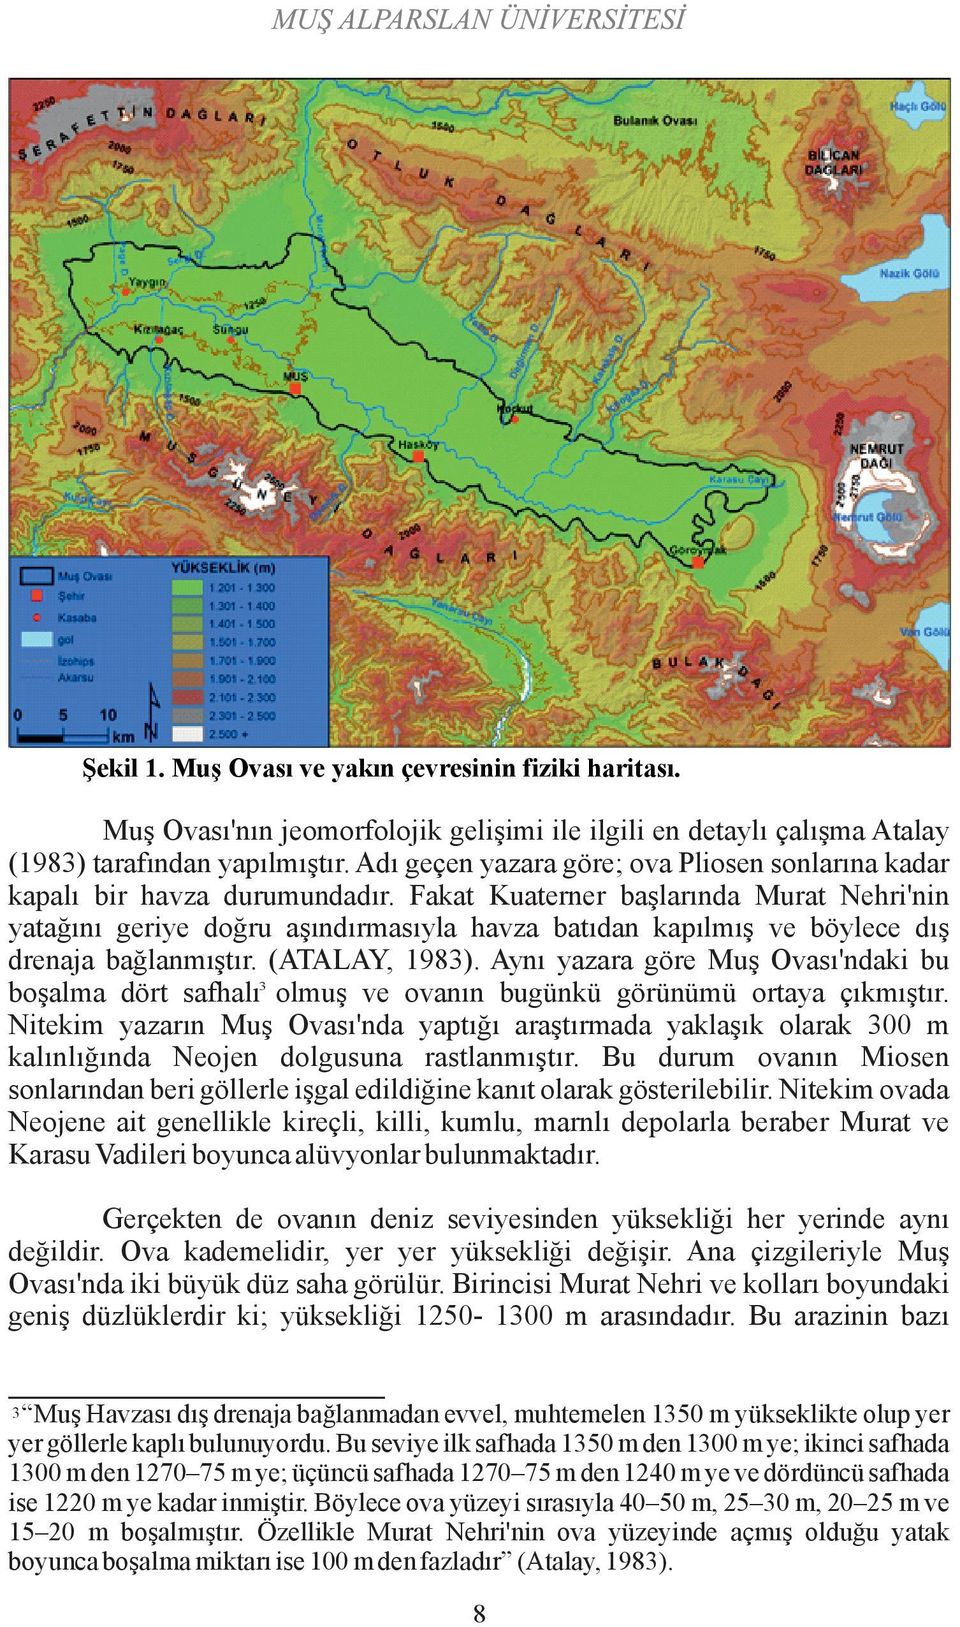 Fakat Kuaterner başlarında Murat Nehri'nin yatağını geriye doğru aşındırmasıyla havza batıdan kapılmış ve böylece dış drenaja bağlanmıştır. (ATALAY, 1983).